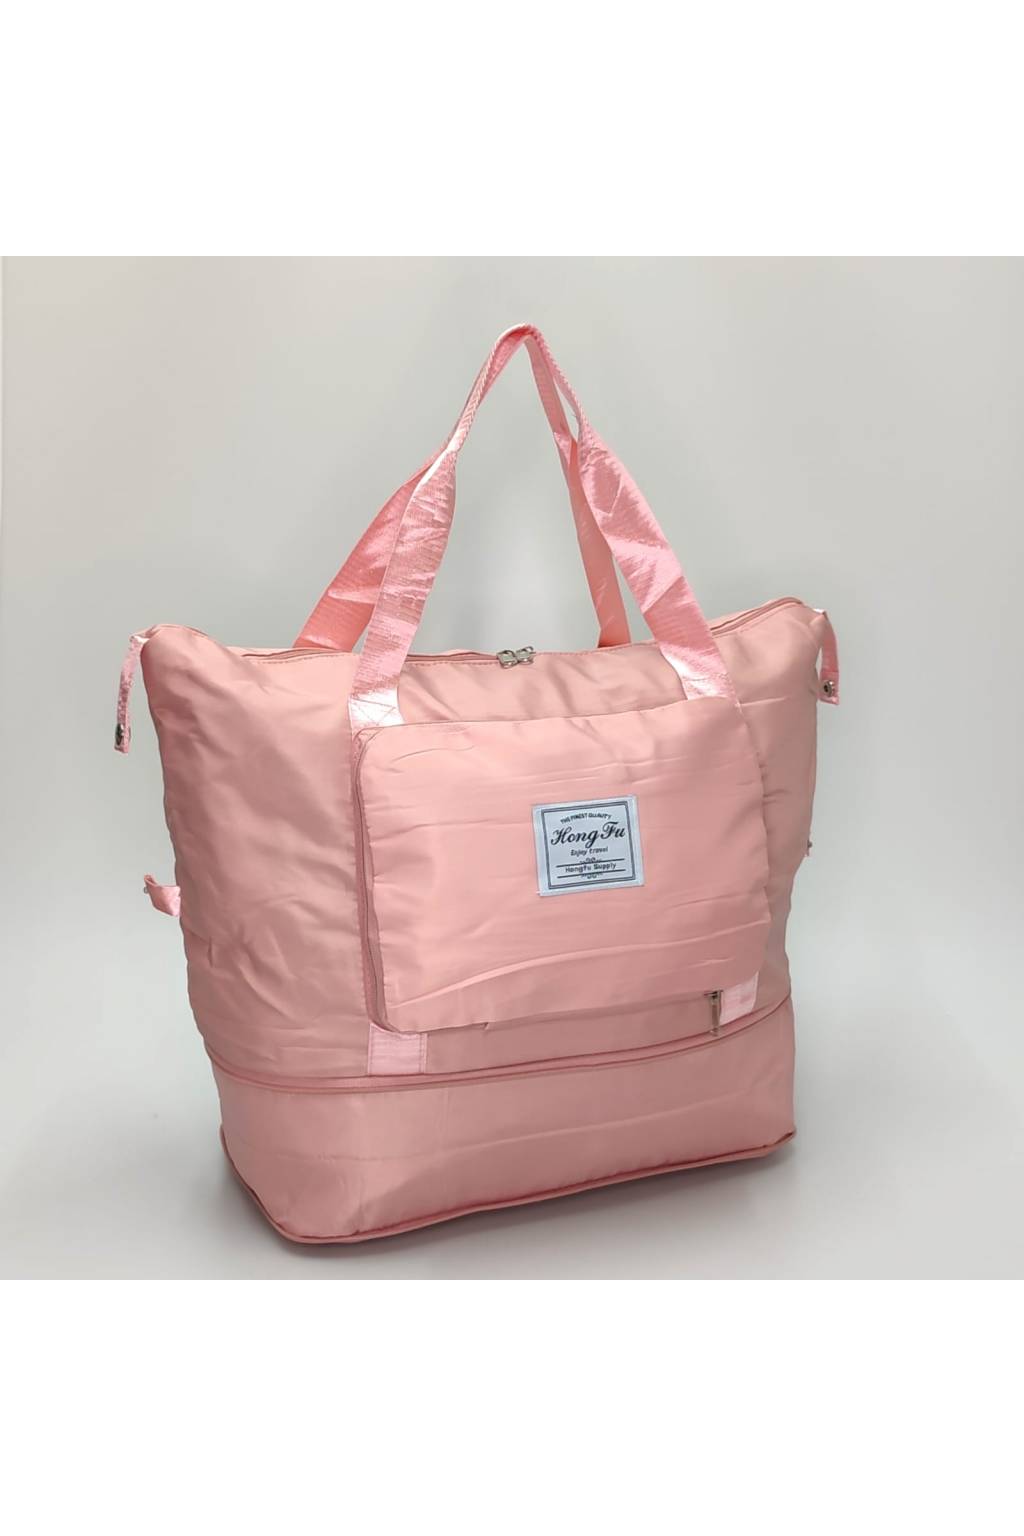 Multifunkčná taška B7061 ružová www.kabelky vypredaj (11)